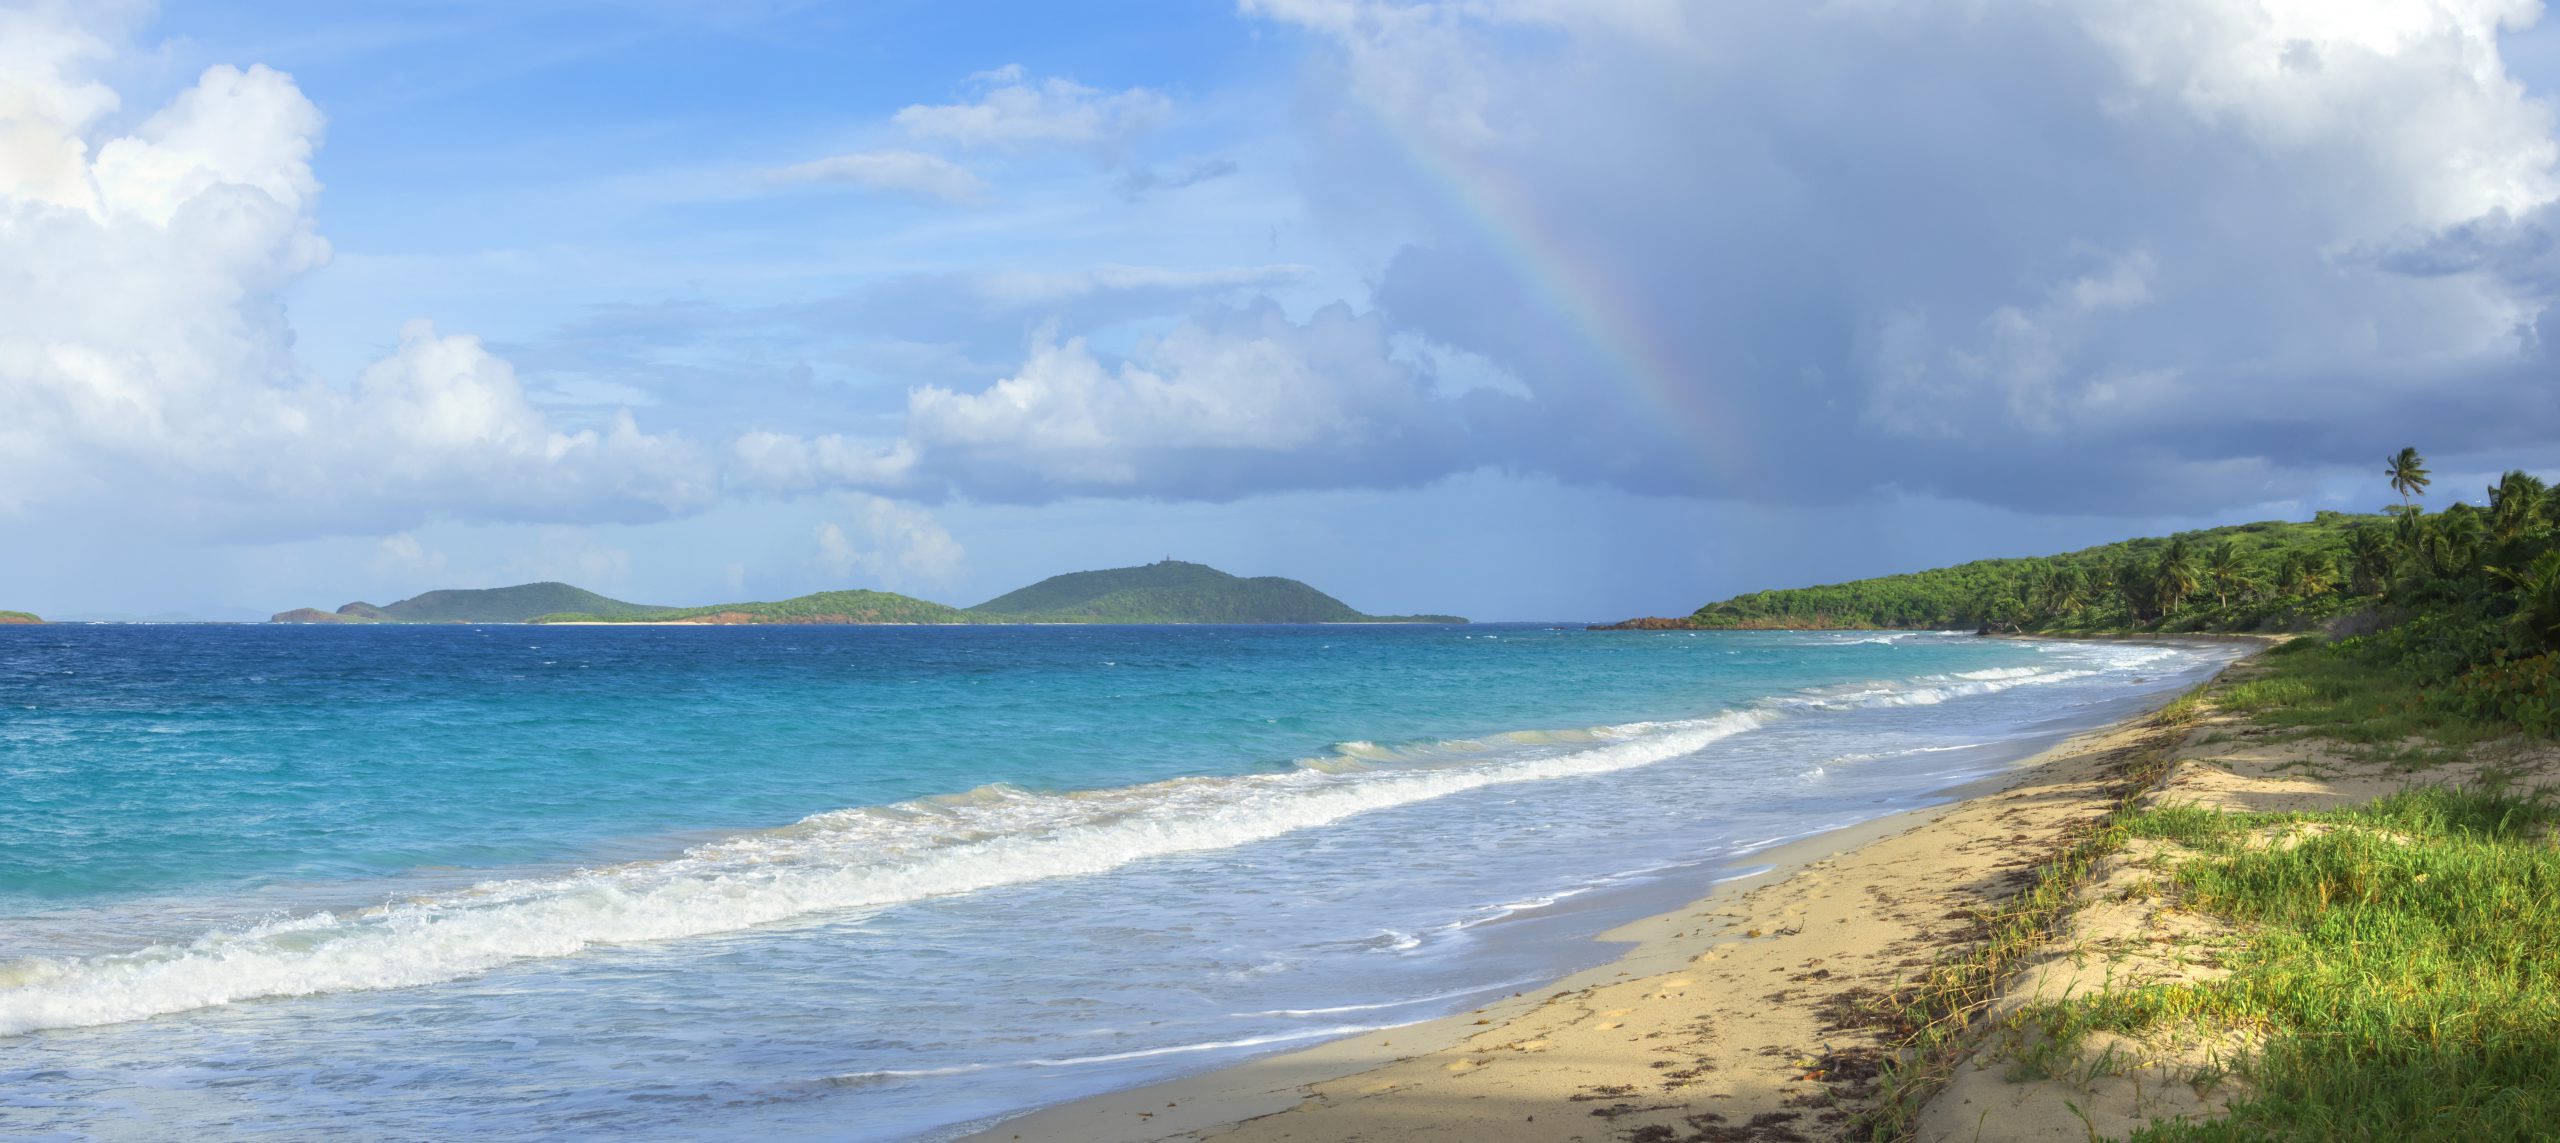 Rainbow over Caribbean island beach